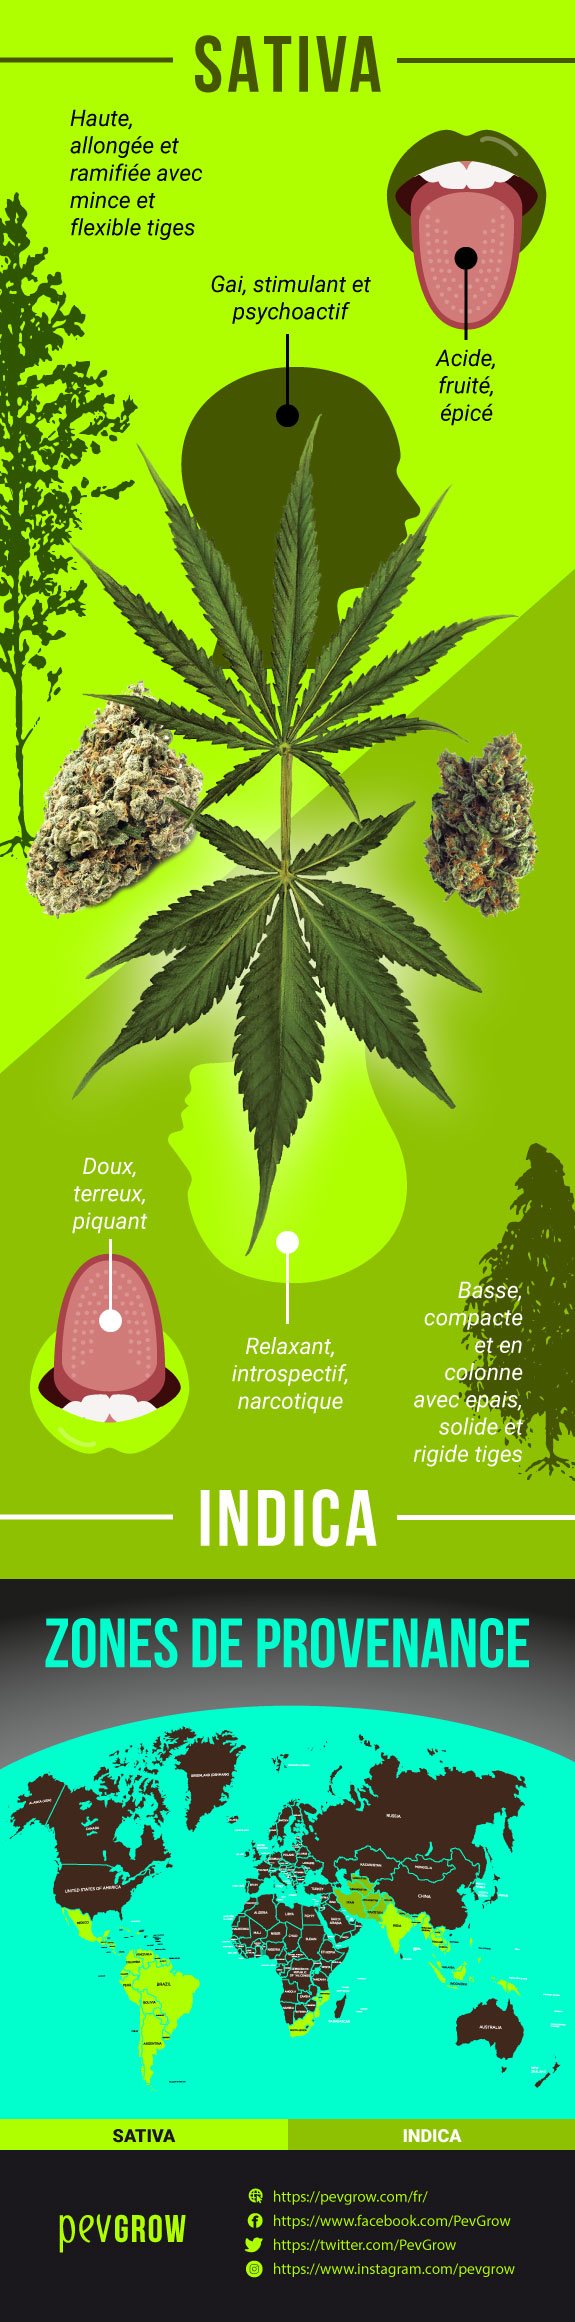 Infographie comparant les caractéristiques d'une plante Sativa et d'une plante Indica.